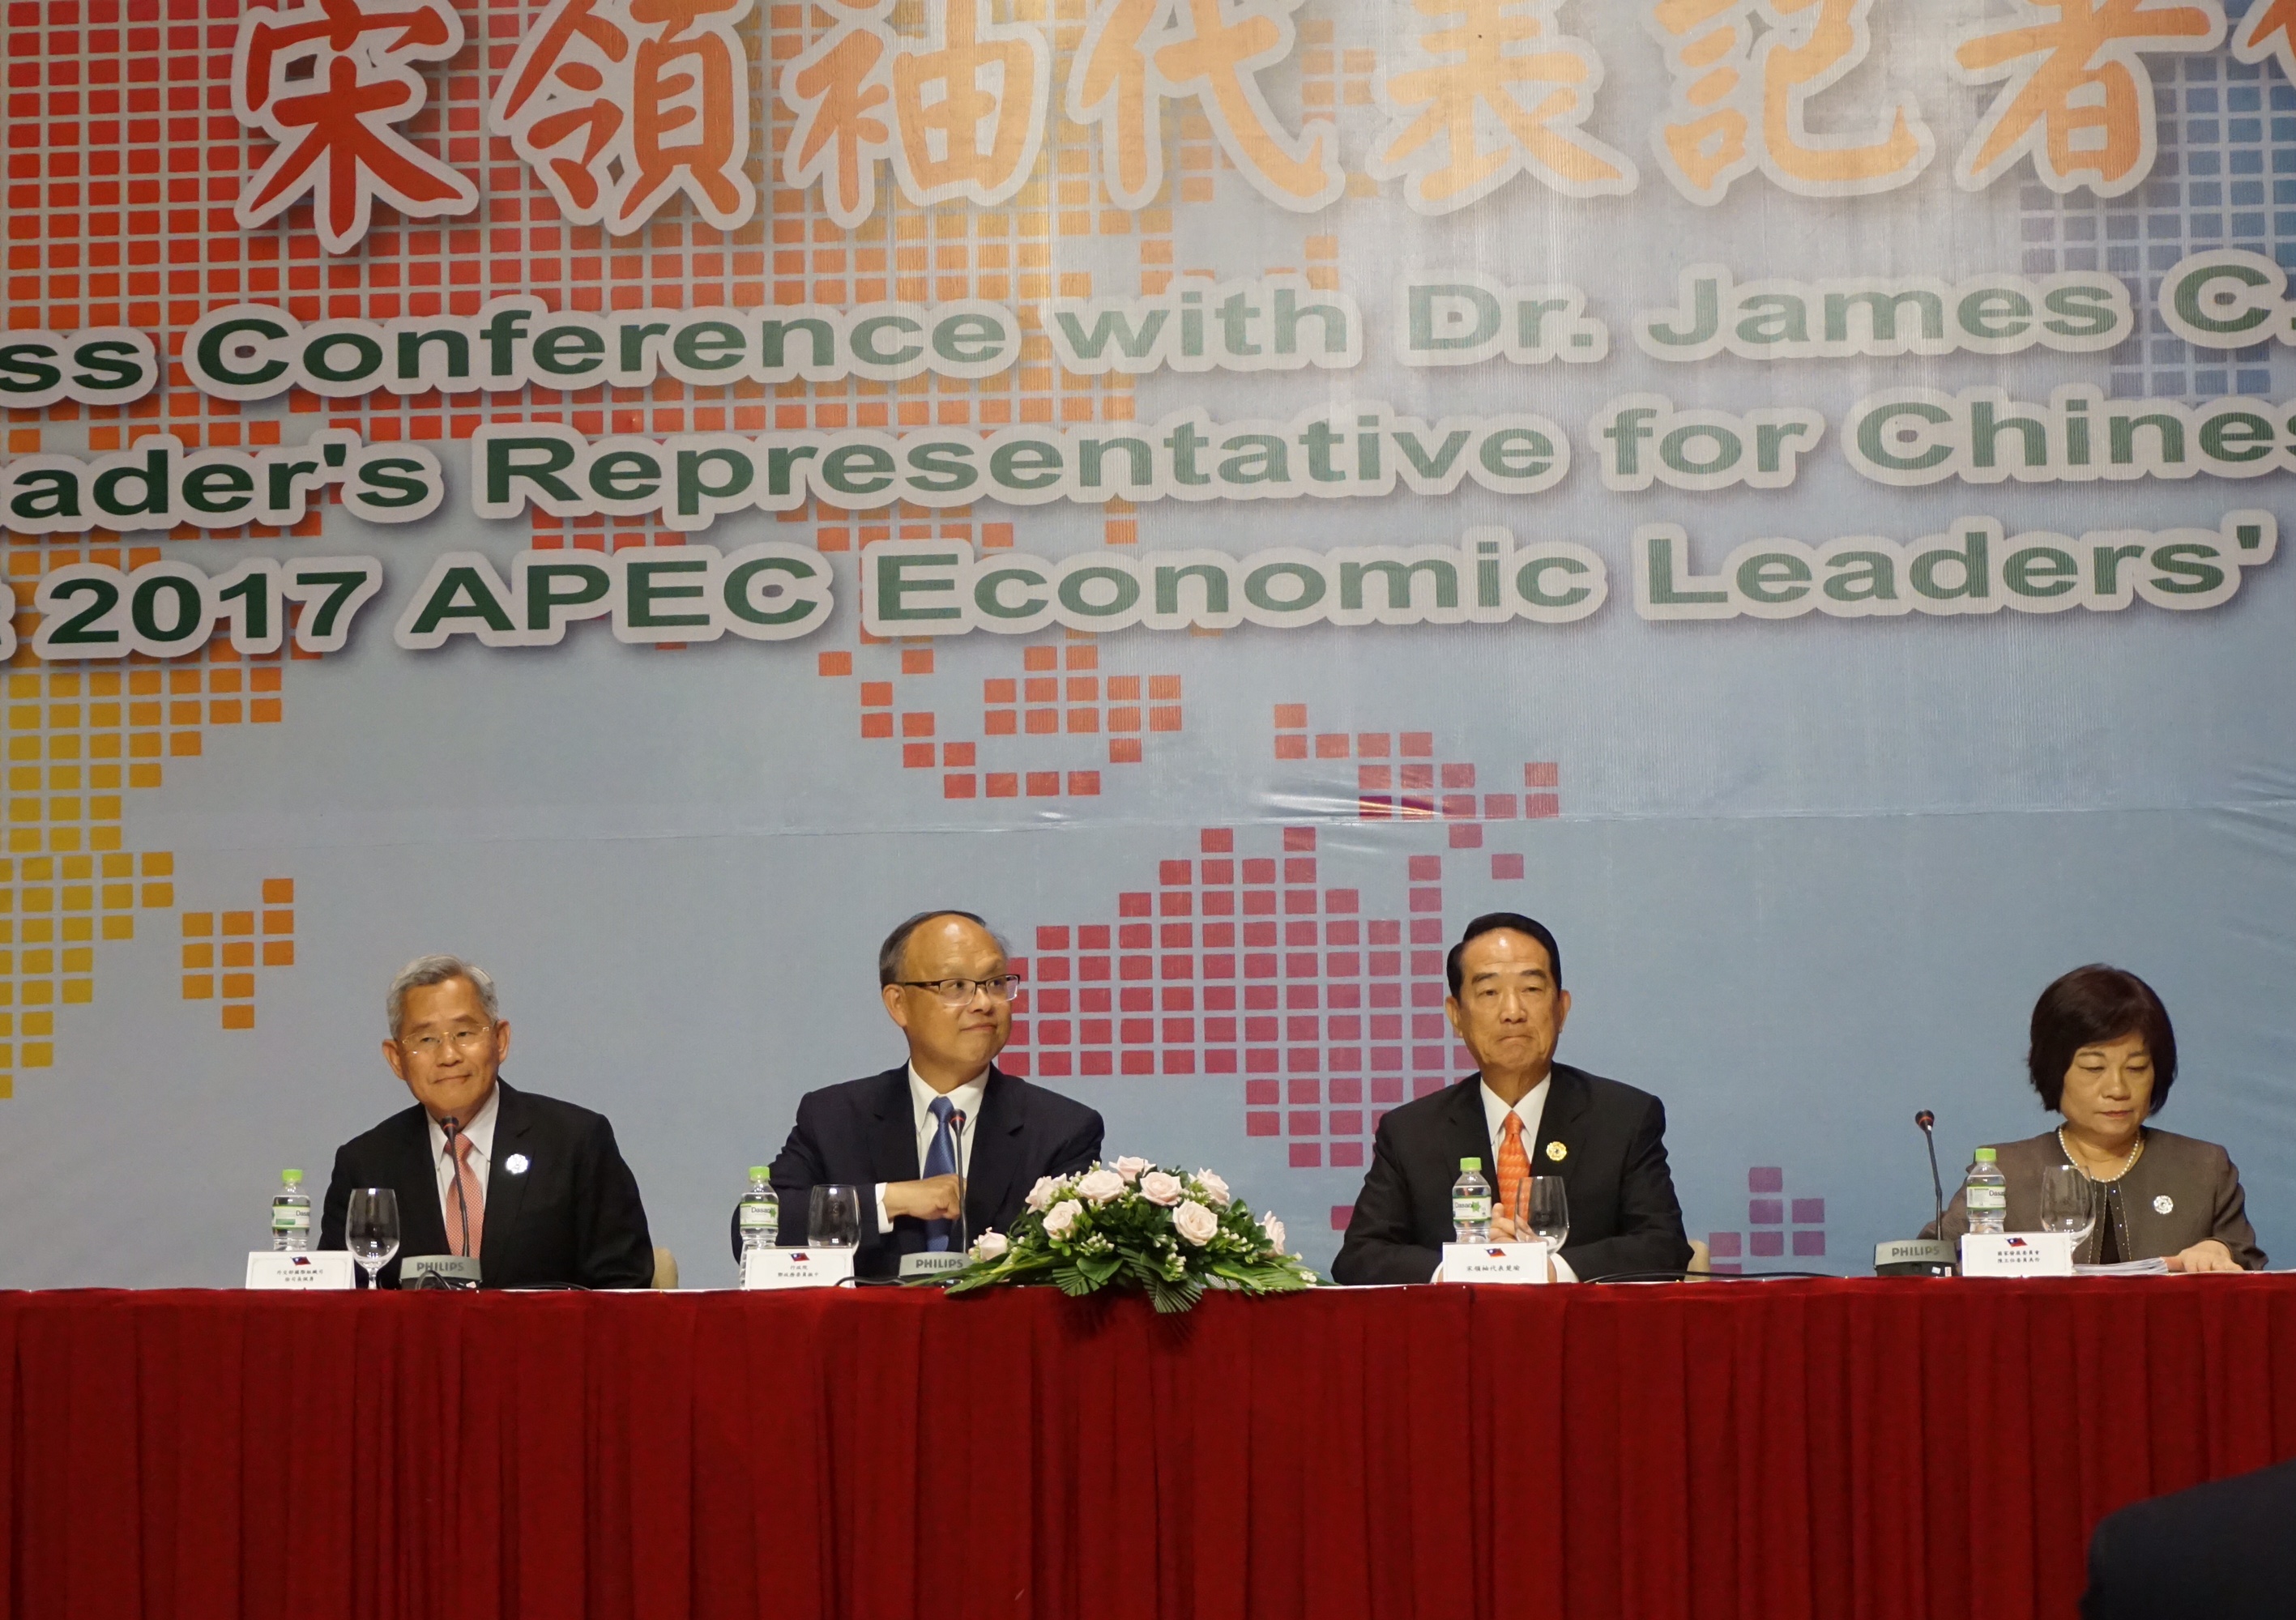 Thảo luận về chính sách hướng nam mới trong hội nghị APEC? Tống 